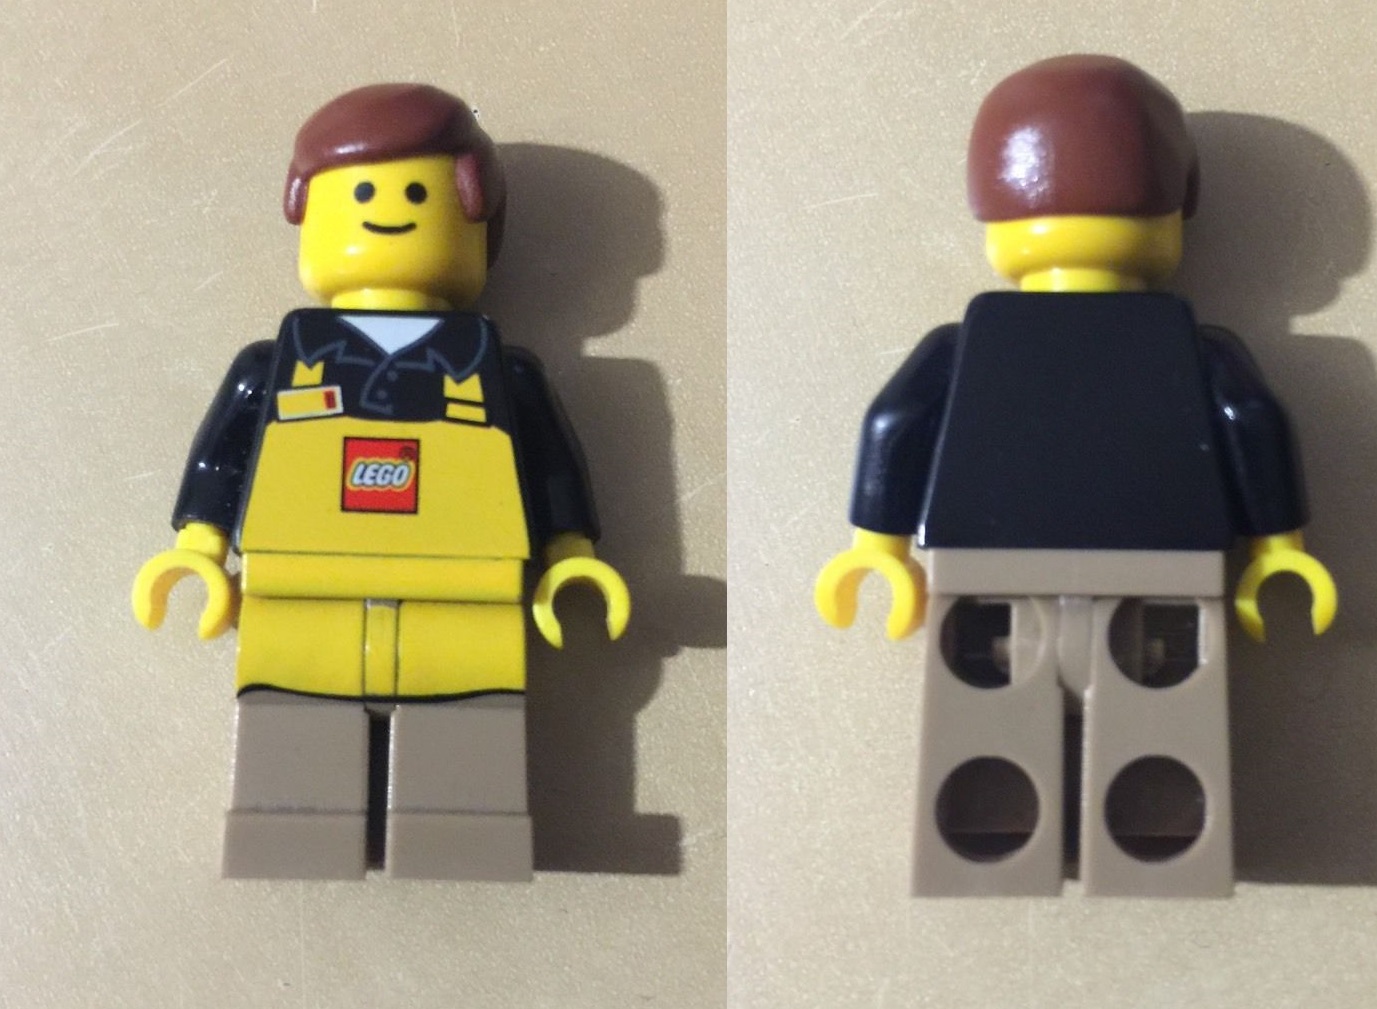 The Minifigure Store - Authorised LEGO Retailer